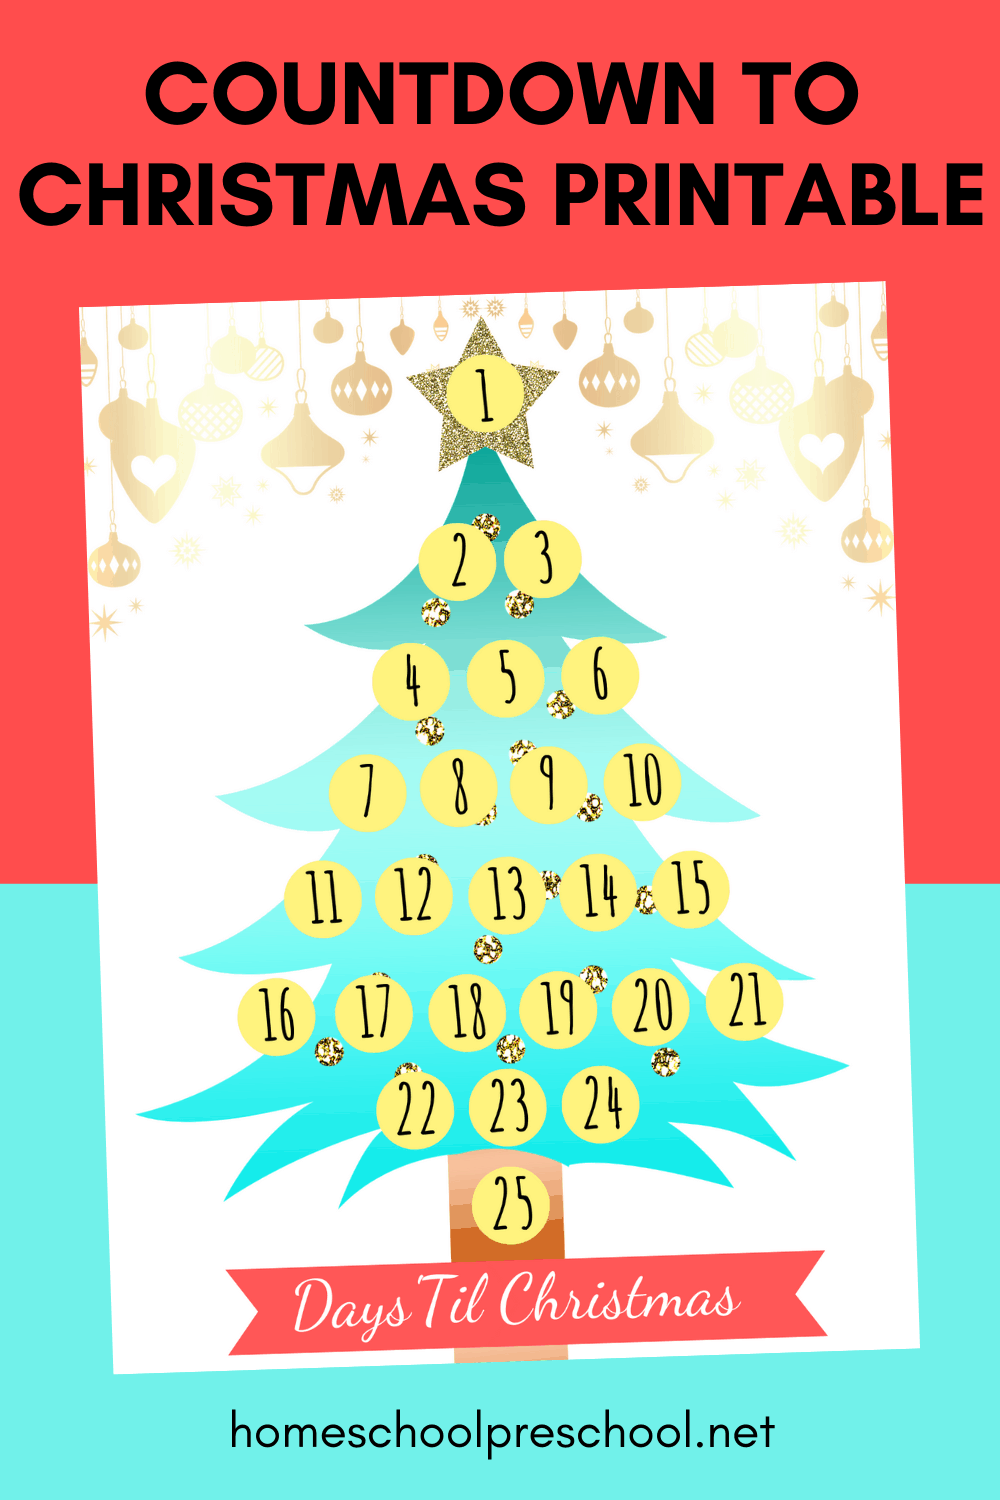 Printable Countdown to Christmas Template for Kids